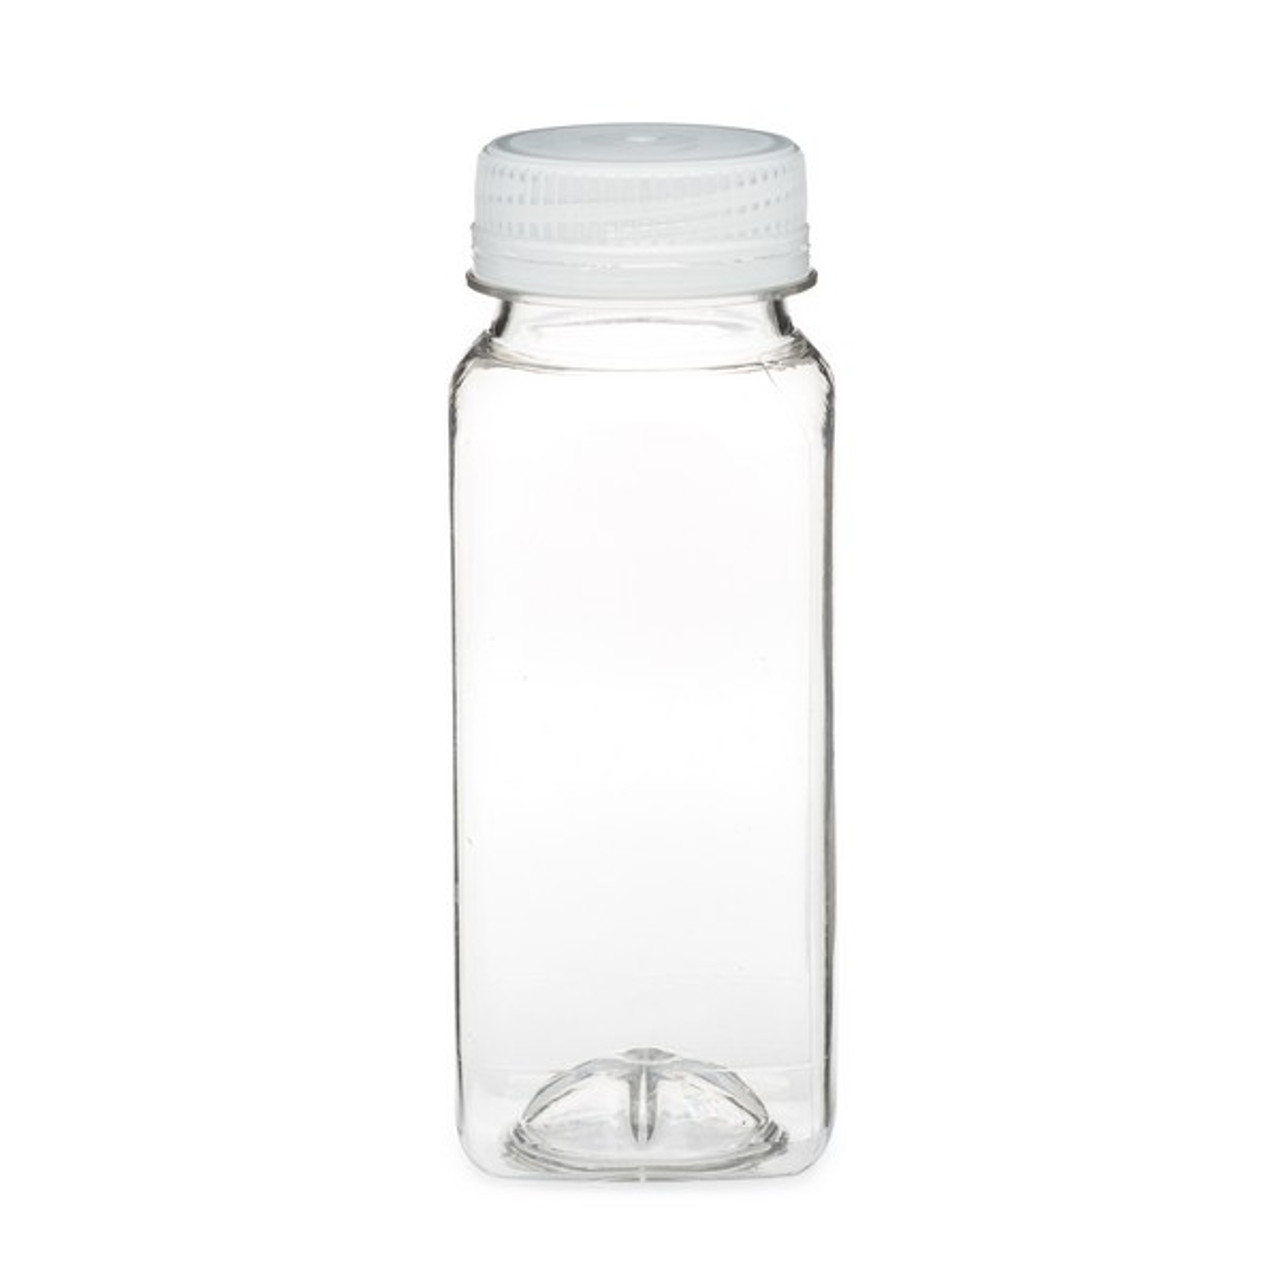 2oz Clear Pet Plastic Beverage Bottle (Natural Tamper-Evident Cap) - Clear 26.7 mm